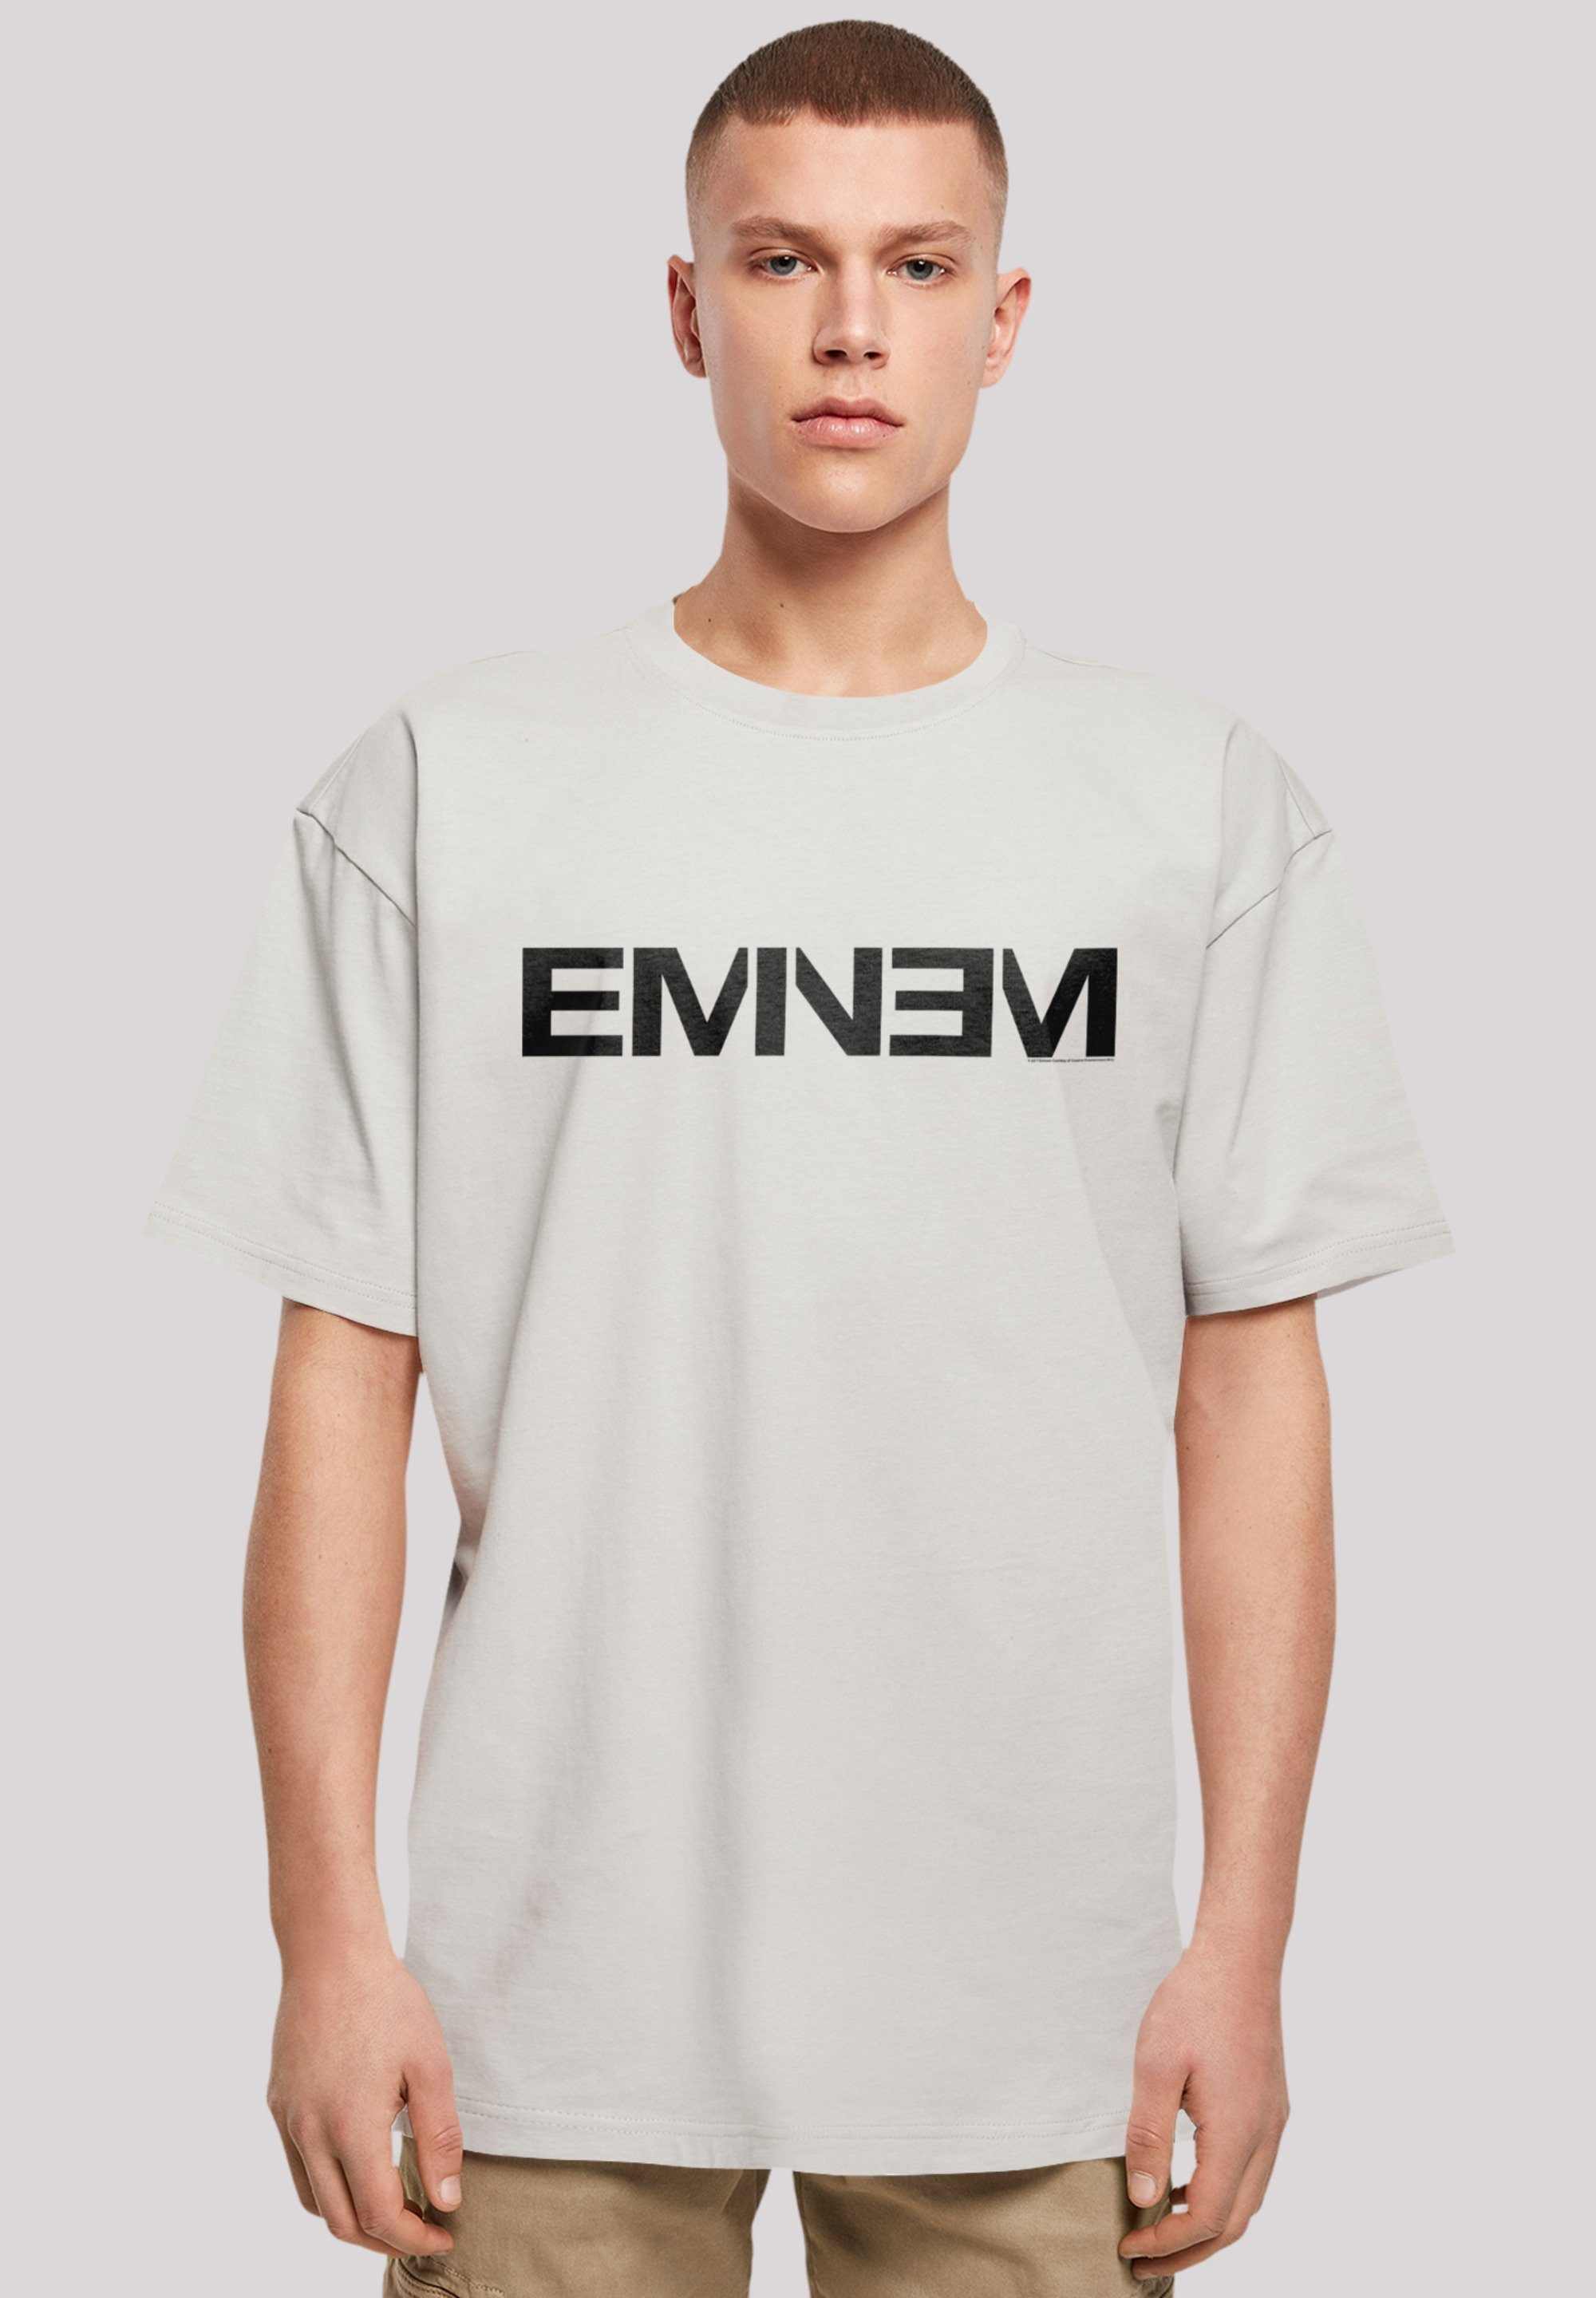 T-Shirt Musik Eminem Premium Rap Hop F4NT4STIC Music Qualität, Hip lightasphalt